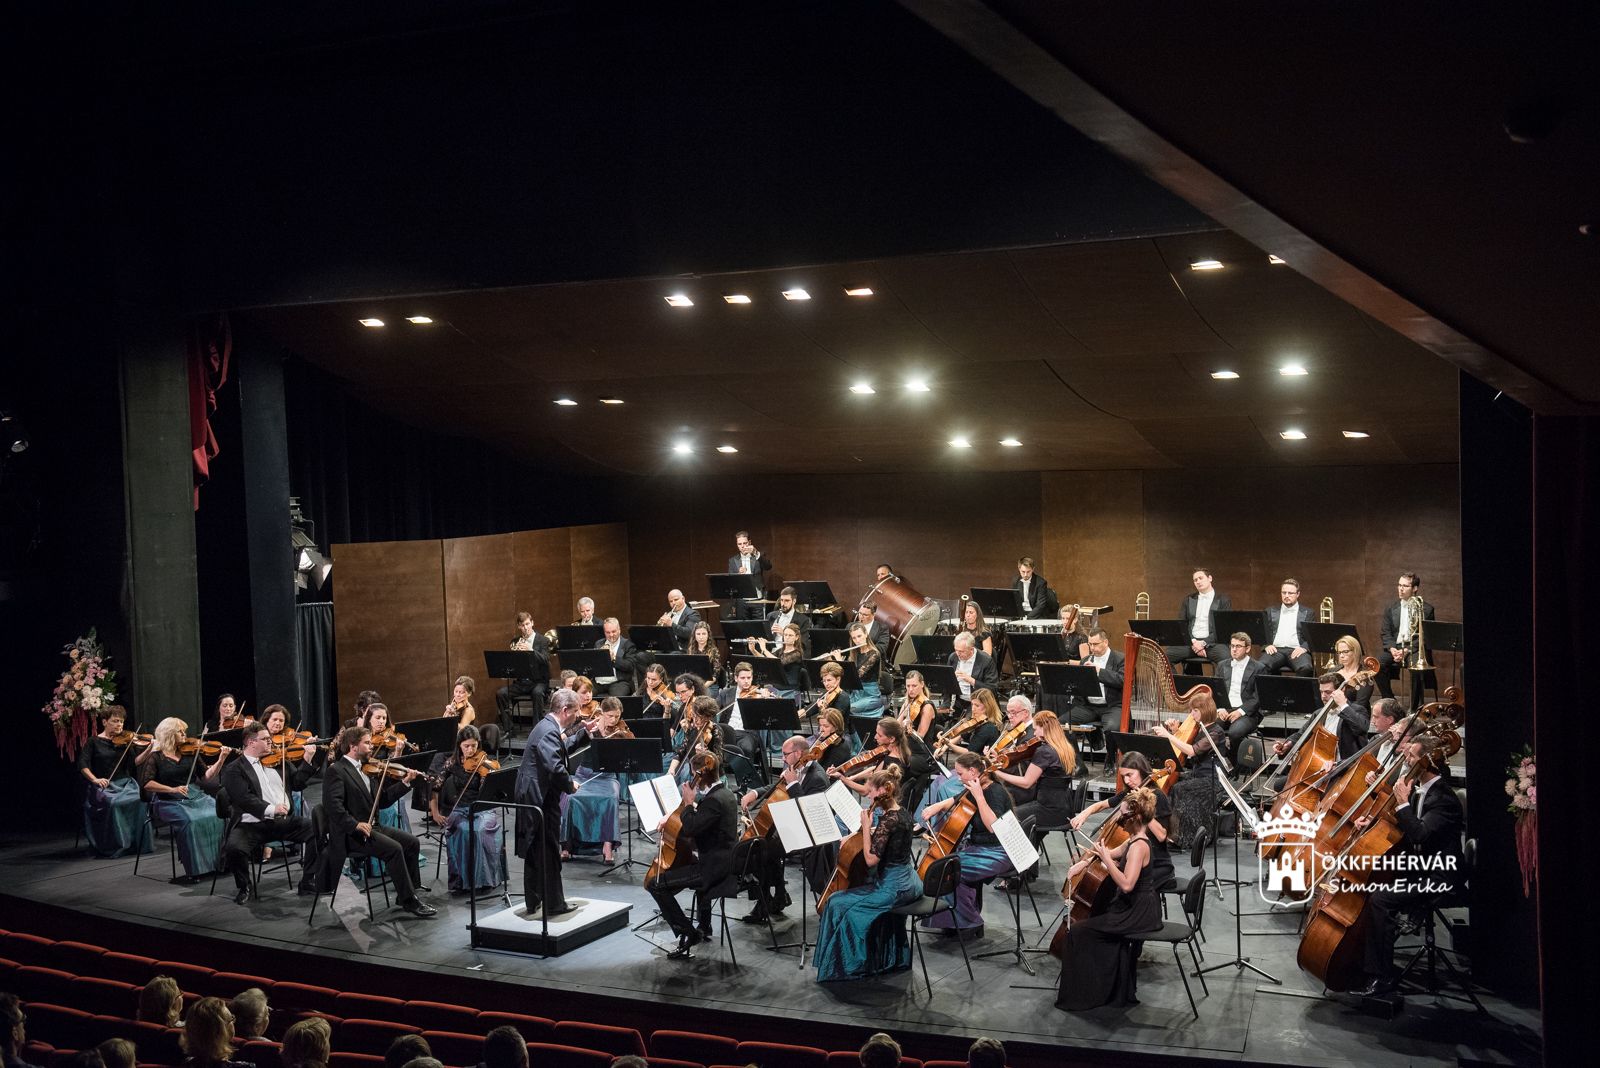 A Farkas Ferenc-bérlet utolsó előadására készülnek a szimfonikusok